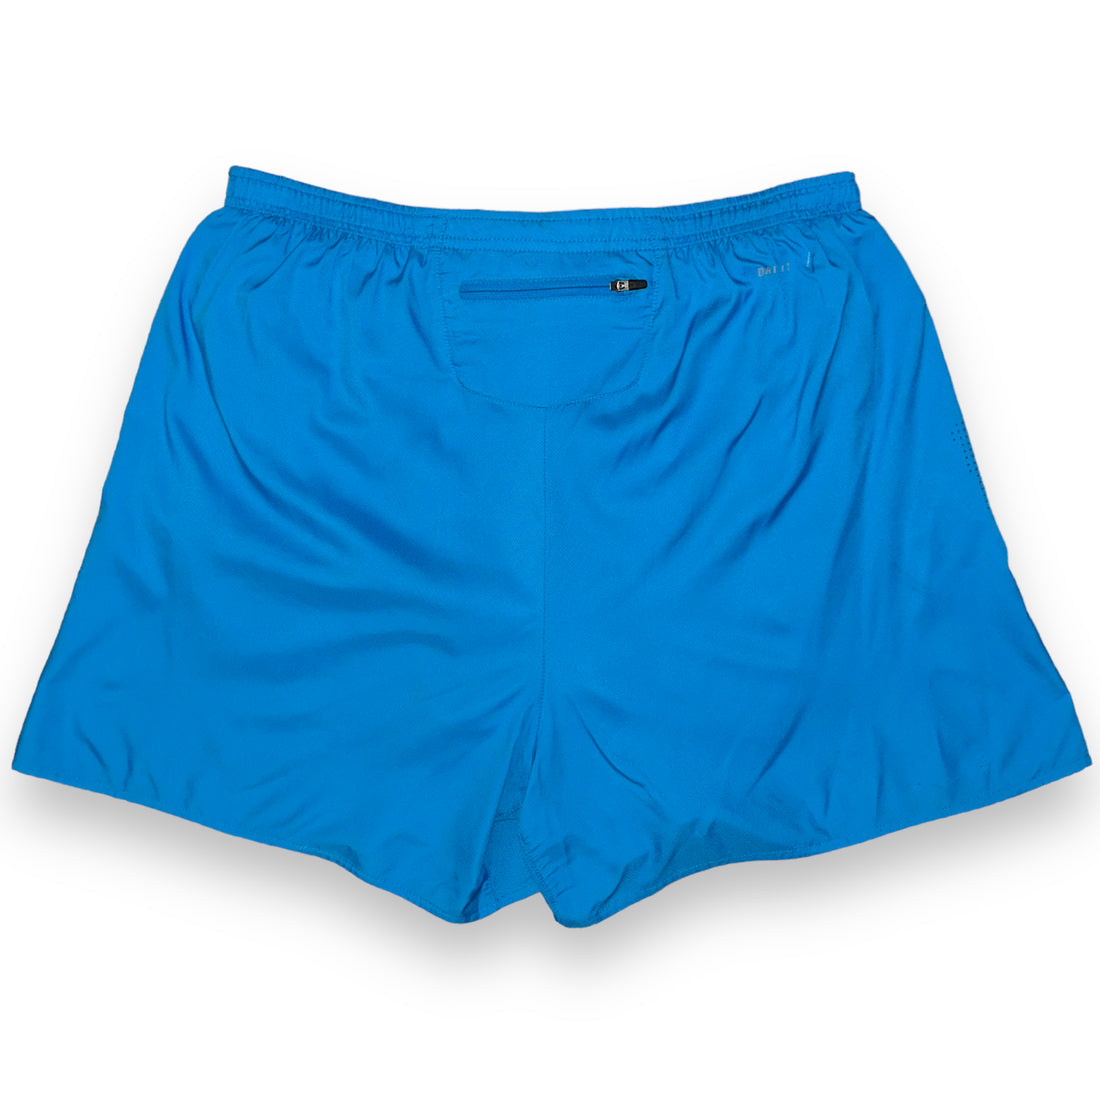 Nike Dry Fit Sports Shorts (L/XL)